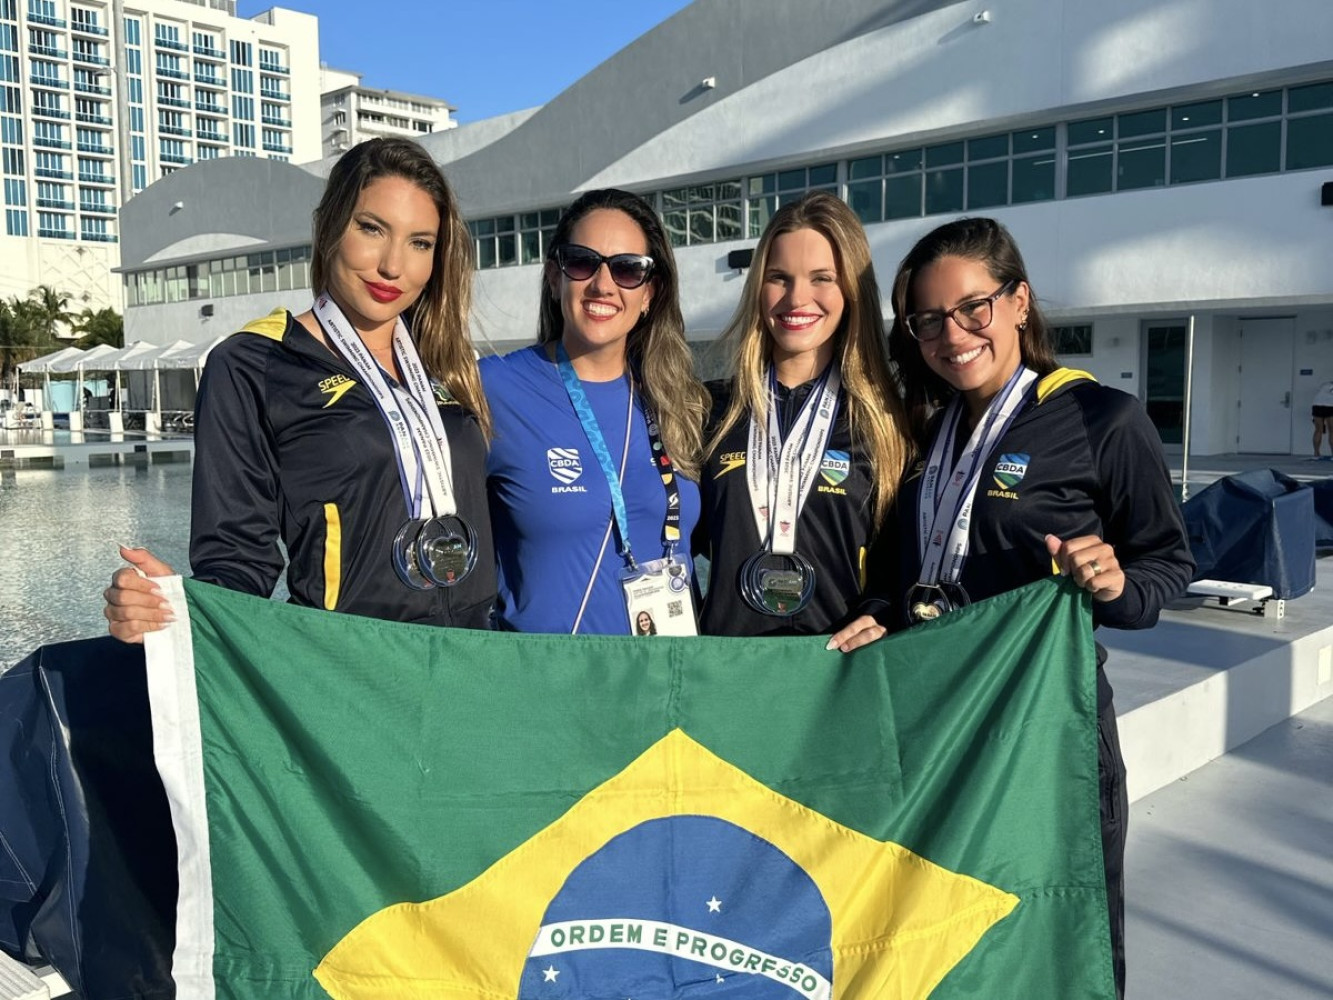 CBX - Brasileiros participam do Campeonato Pan-Americano Sênior de